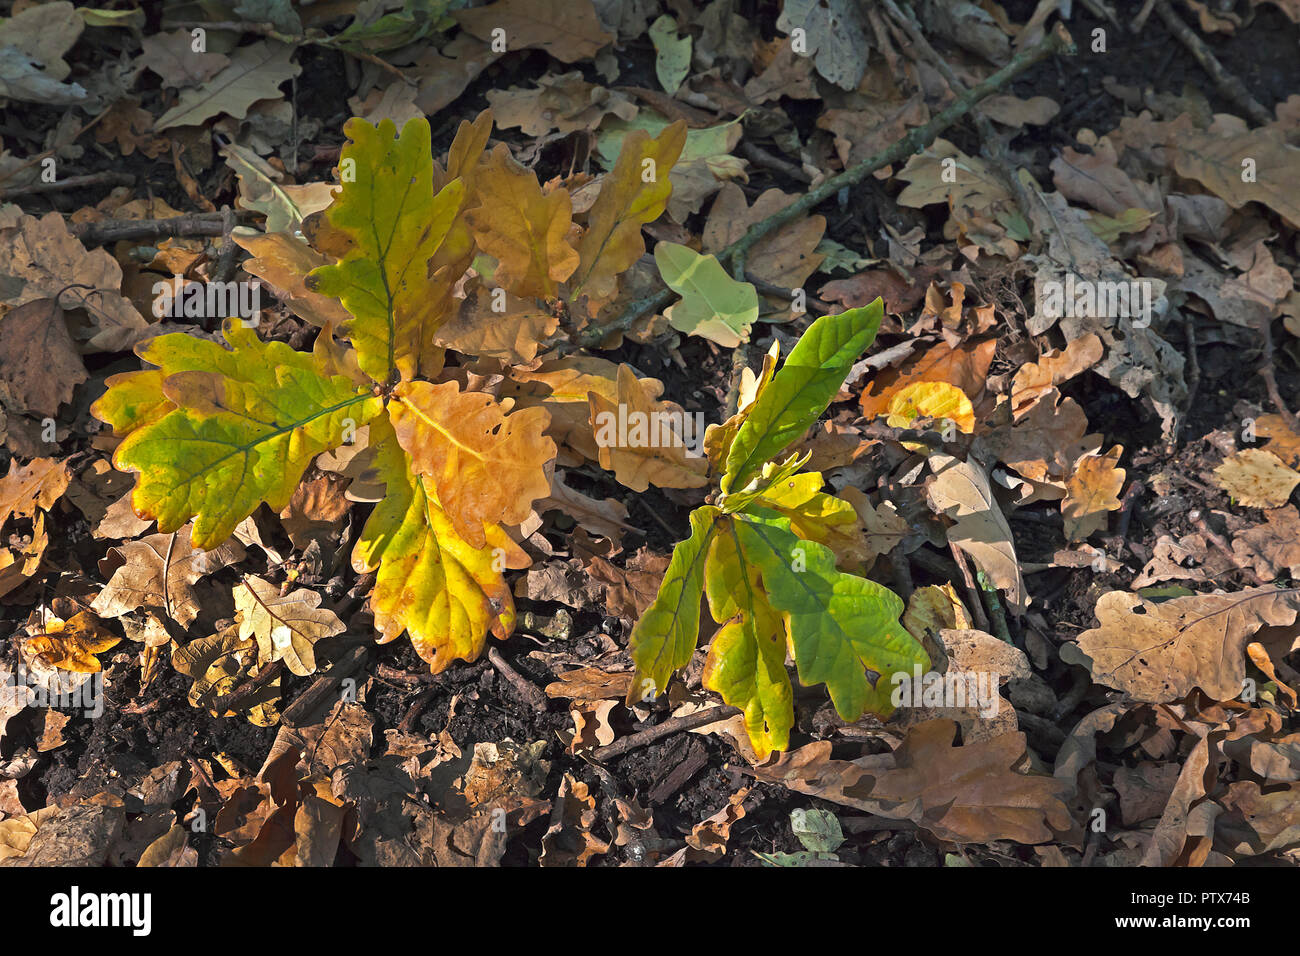 Fallen Oak leaves on forest floor in Autumn Stock Photo